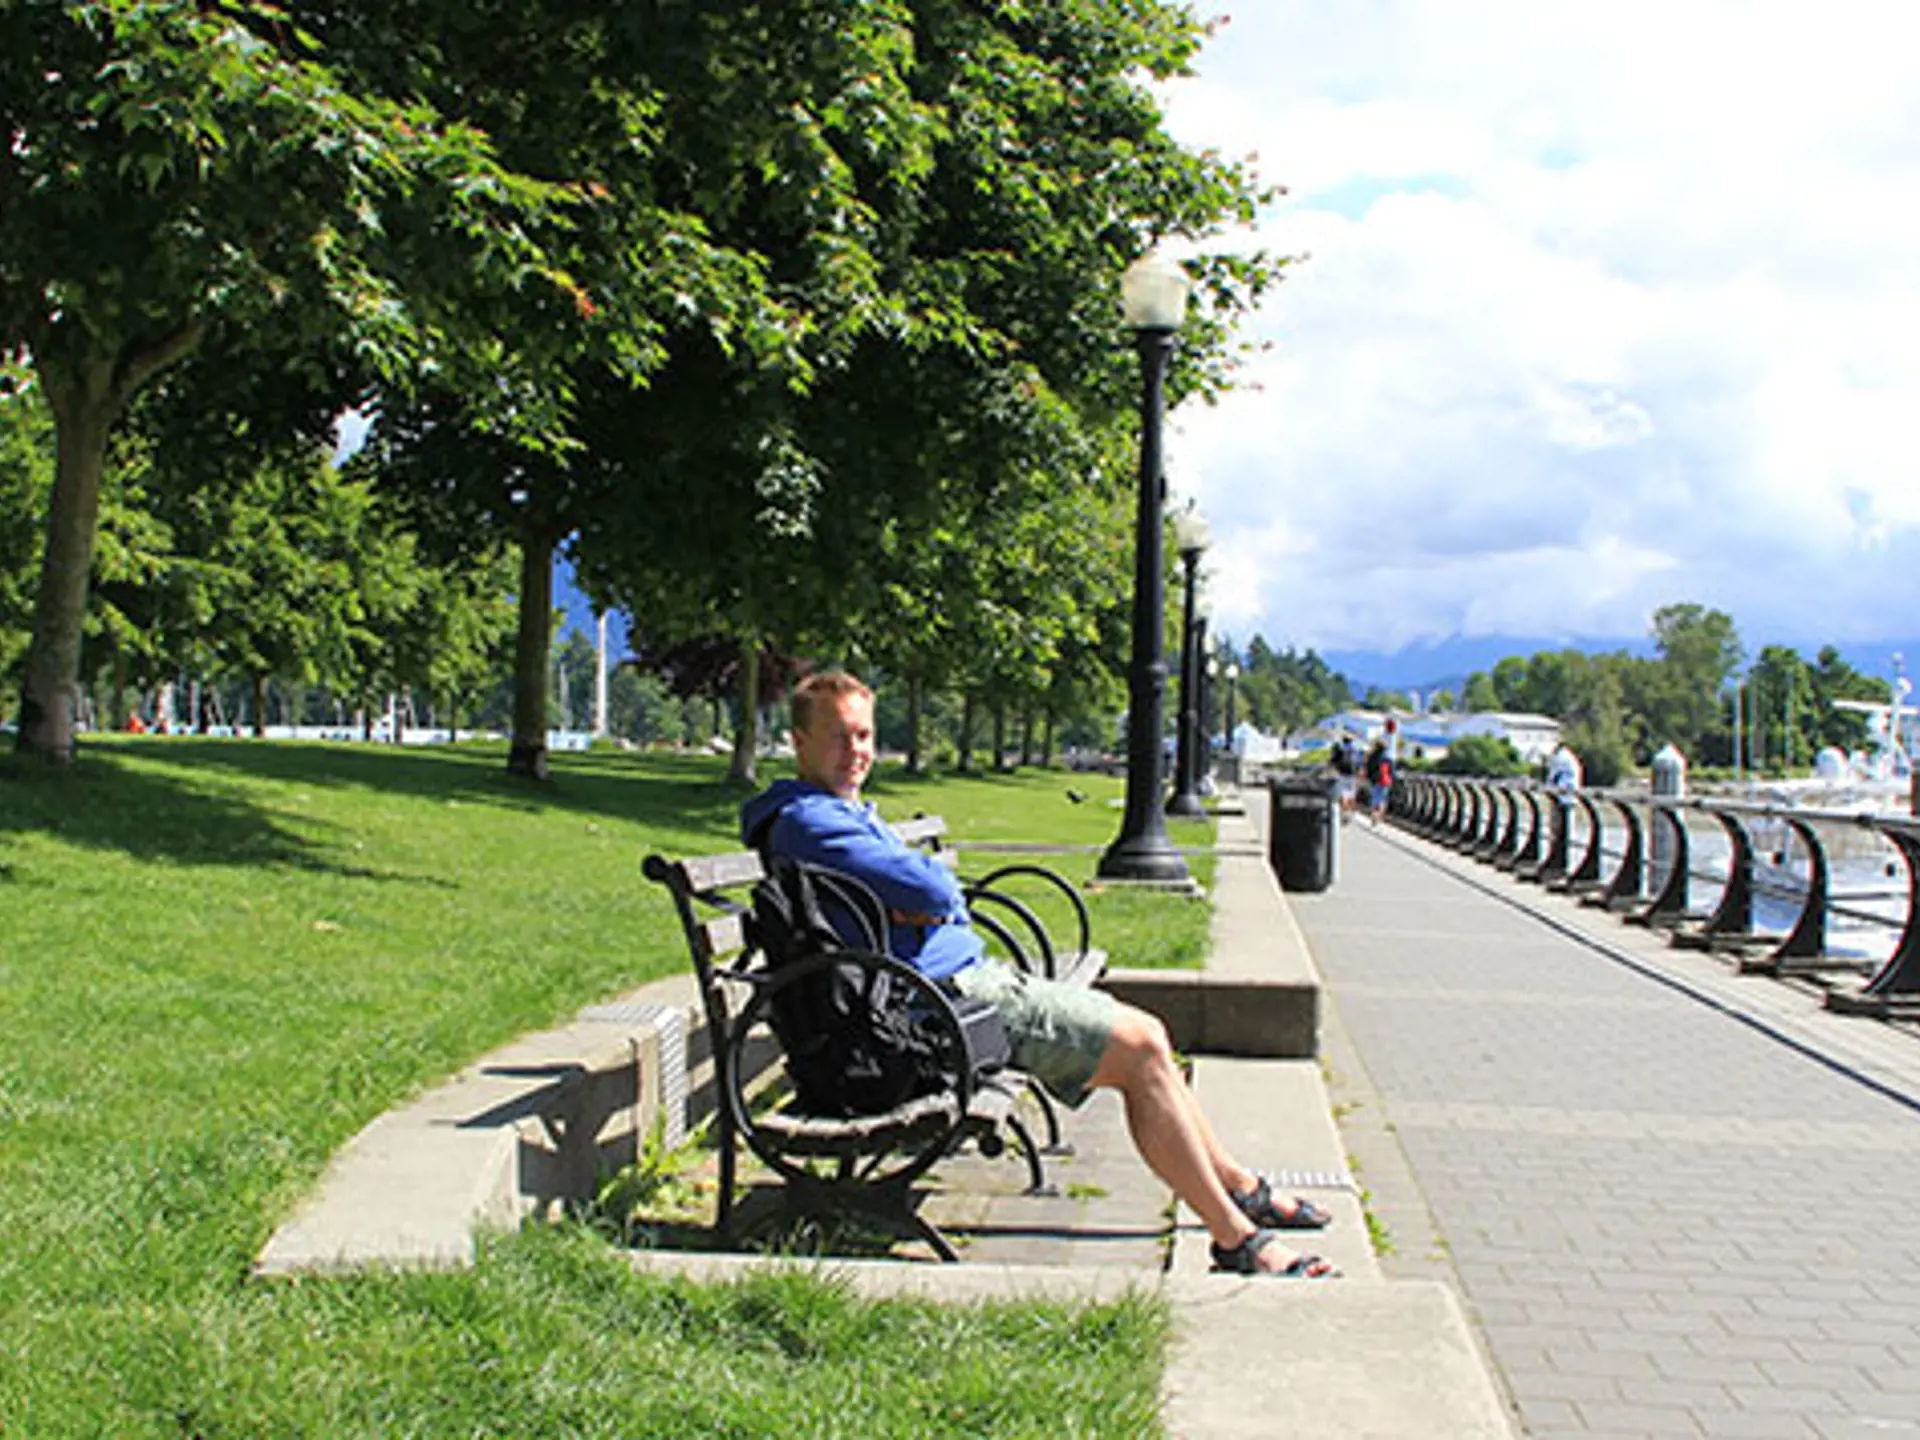 VANCOUVER - Besøg Stanley Park, byens grønne oase. Her er liv og leben - og dyreliv. Fra egern over vaskebjørne og bævere til hvidhovedet havørn, Check Point Travel